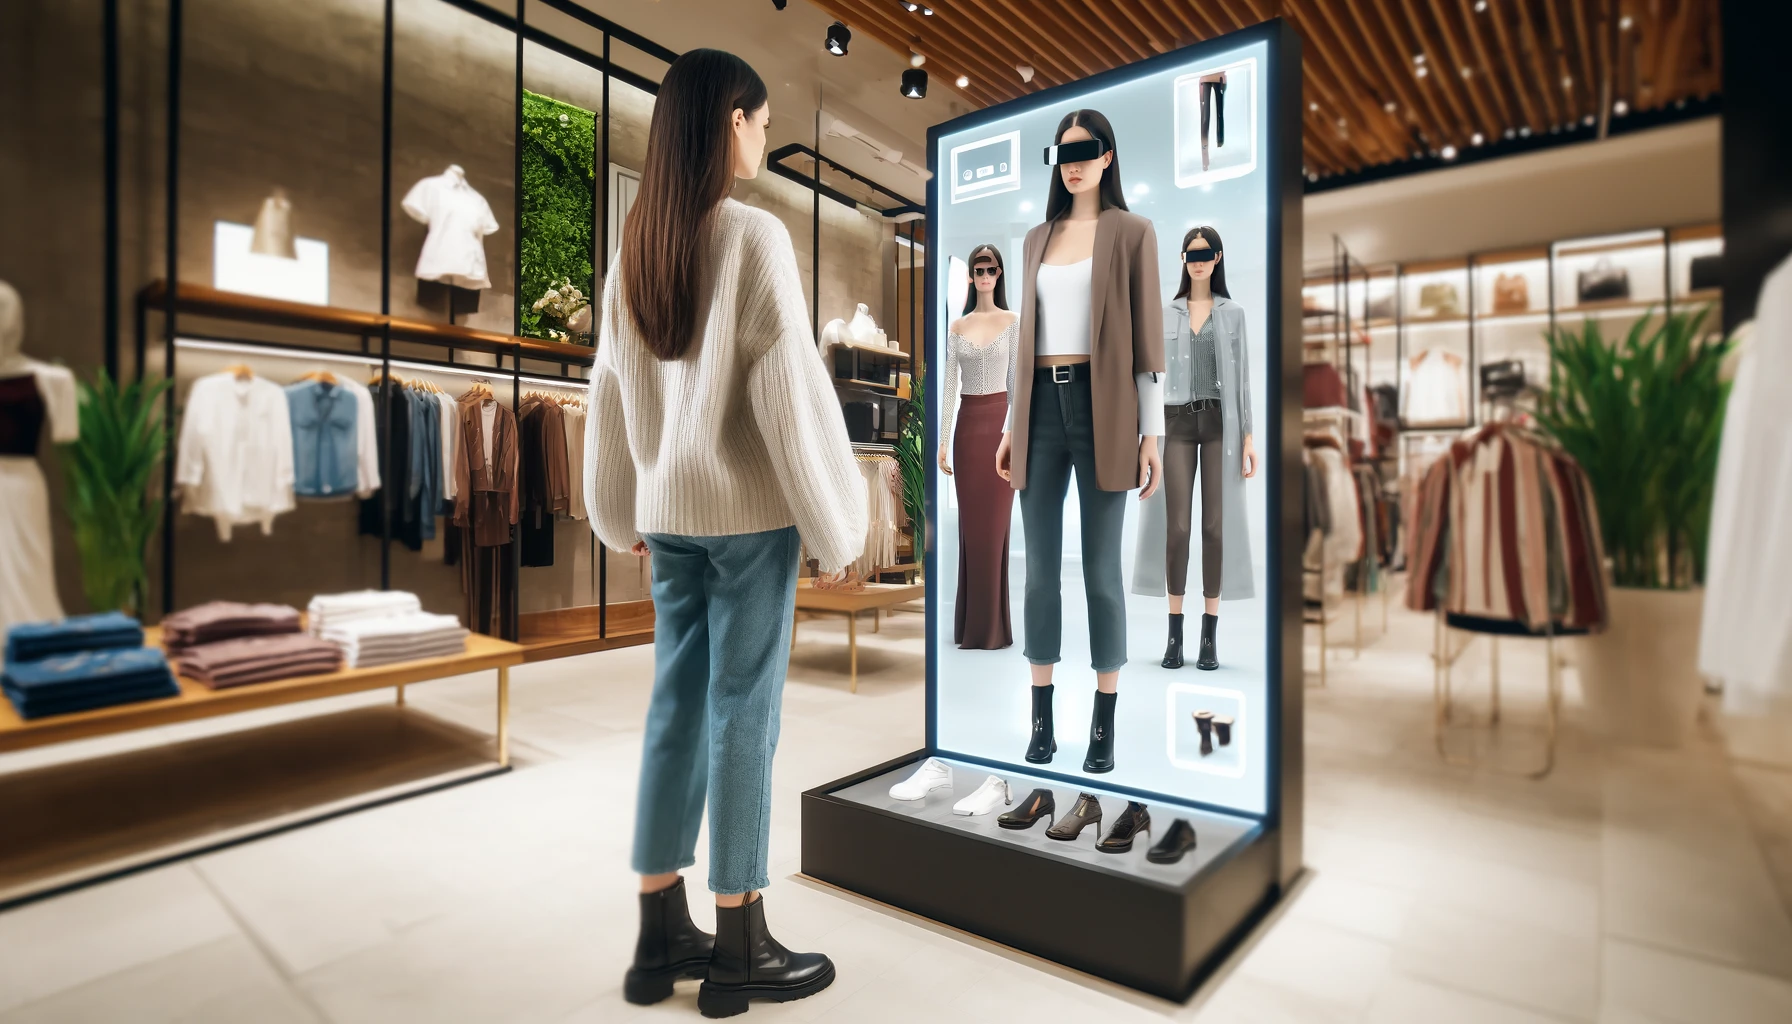 Un cliente utilizando realidad aumentada en una tienda de ropa para probarse diferentes atuendos virtualmente. La imagen muestra a una joven frente a un espejo digital grande, viéndose con varios atuendos en realidad aumentada.